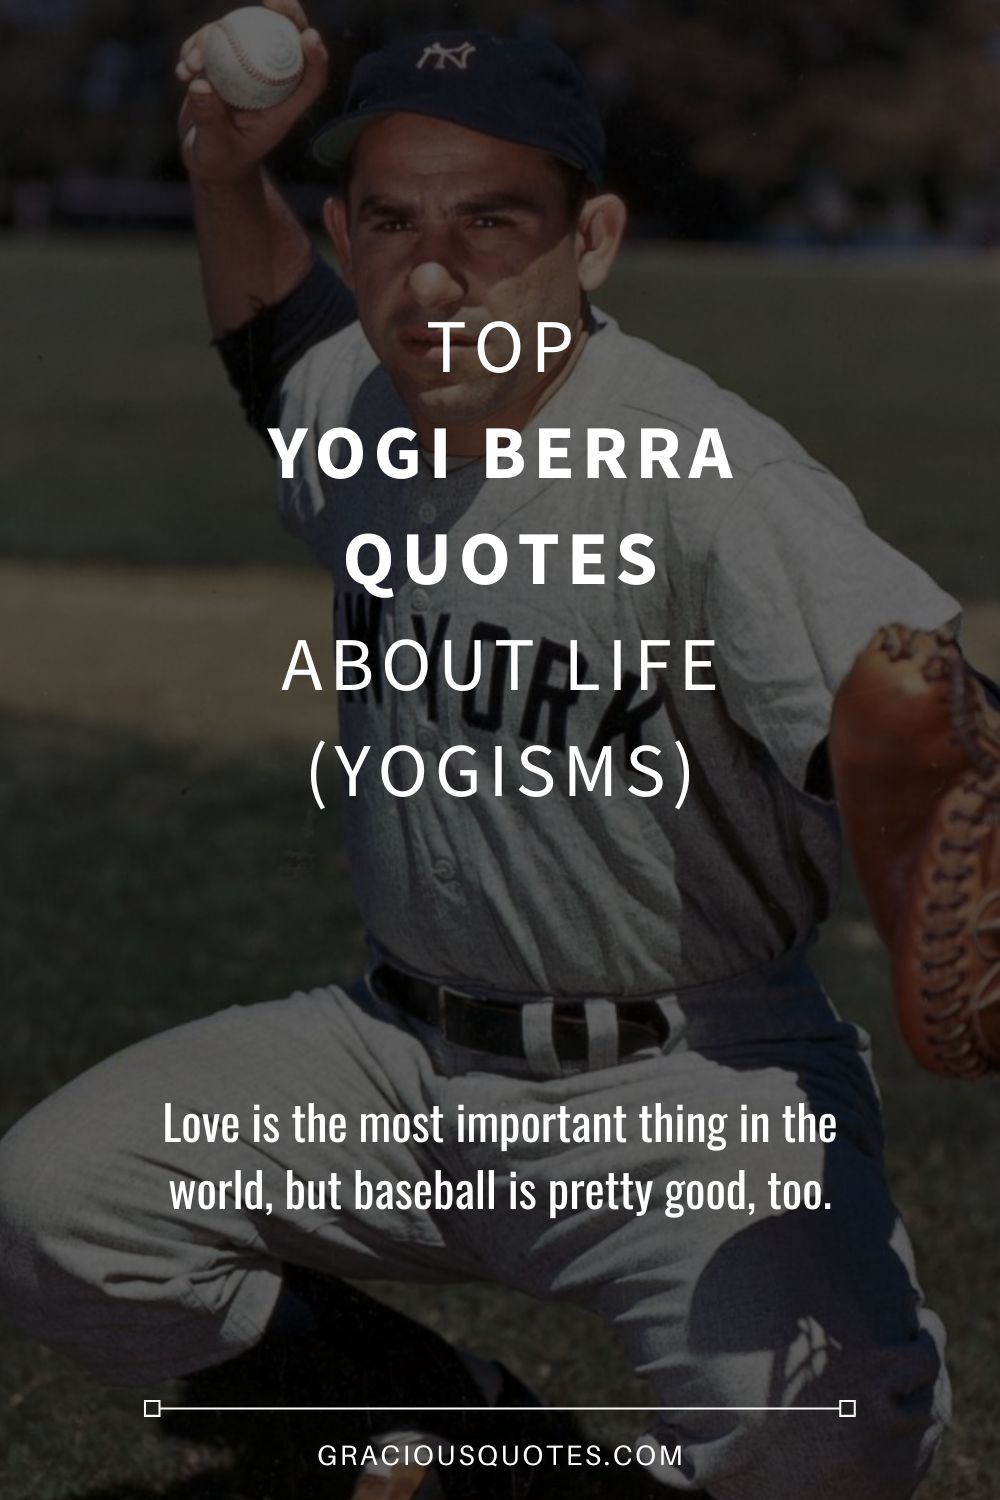 Yogi Berra's 10 Best Quotes for Entrepreneurs